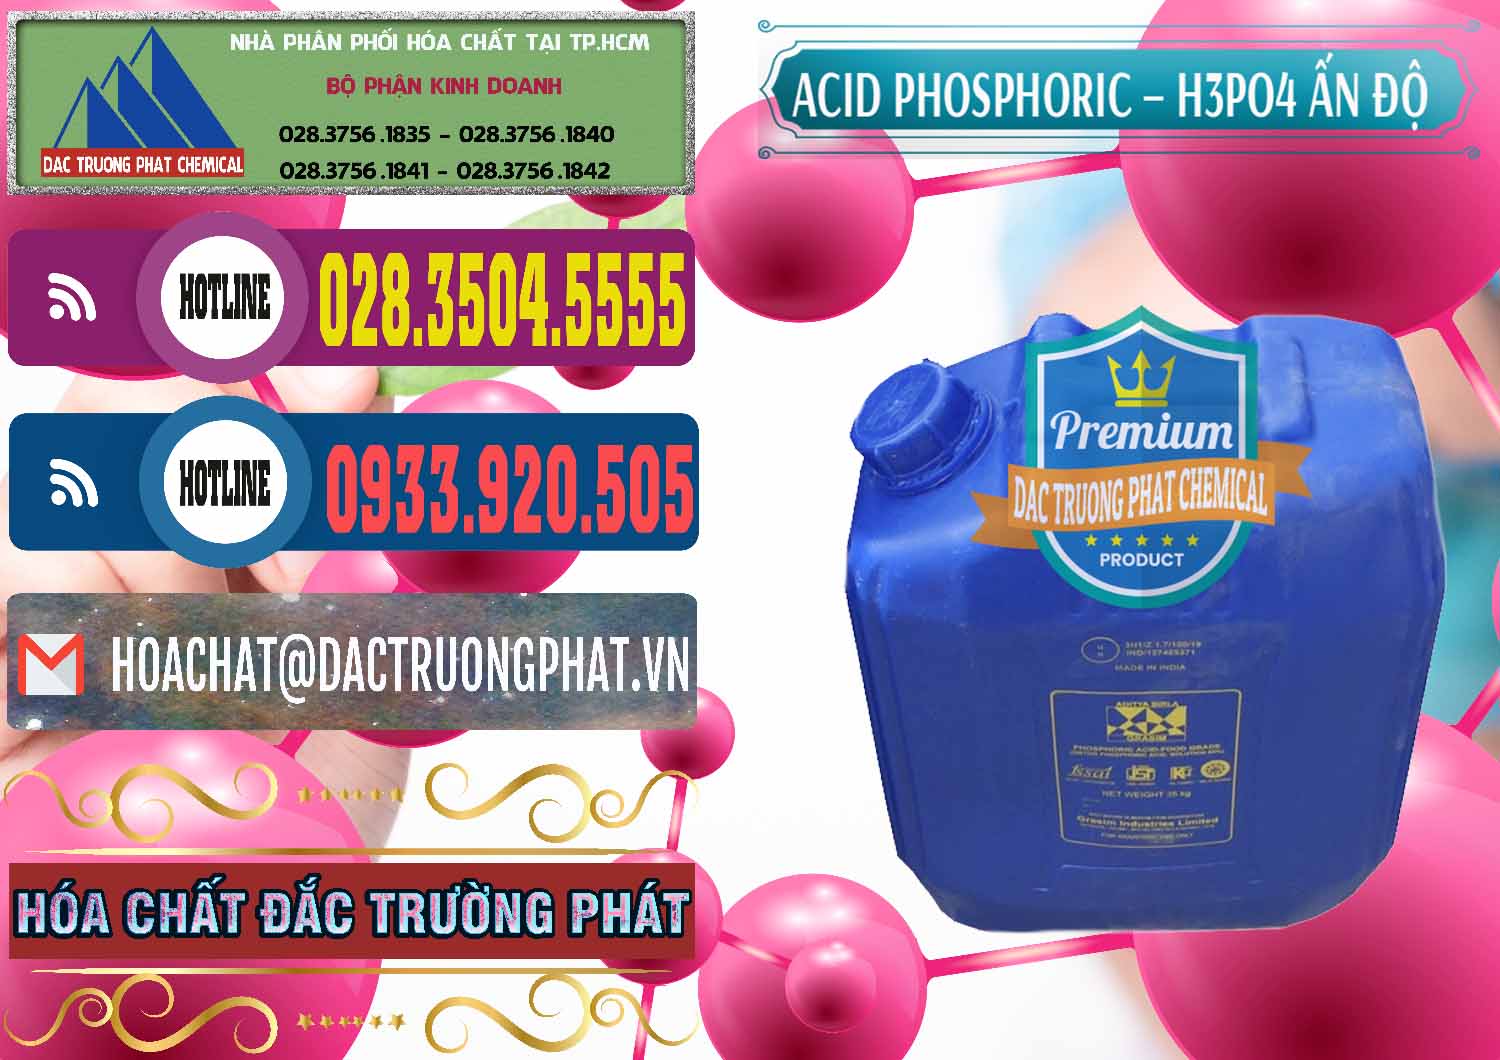 Cty chuyên bán - cung cấp Axit Phosphoric H3PO4 85% Ấn Độ - 0350 - Đơn vị bán - cung cấp hóa chất tại TP.HCM - muabanhoachat.com.vn